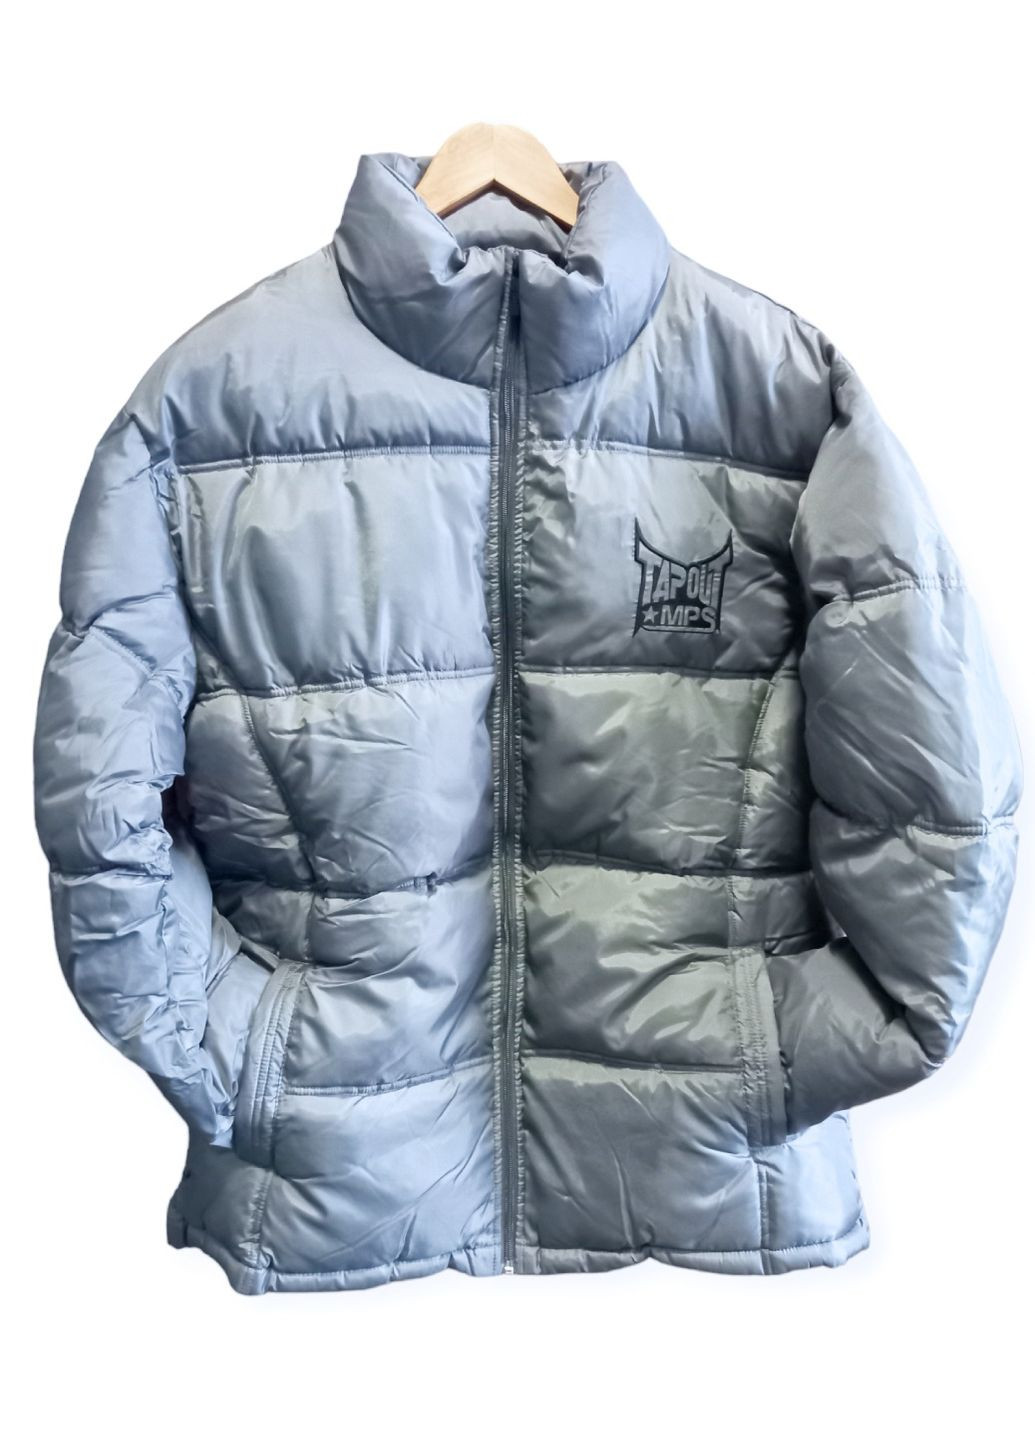 Серебряная демисезонная фирменная куртка мужская новая синтепон серая xl с внутренним карманом теплая Tapout